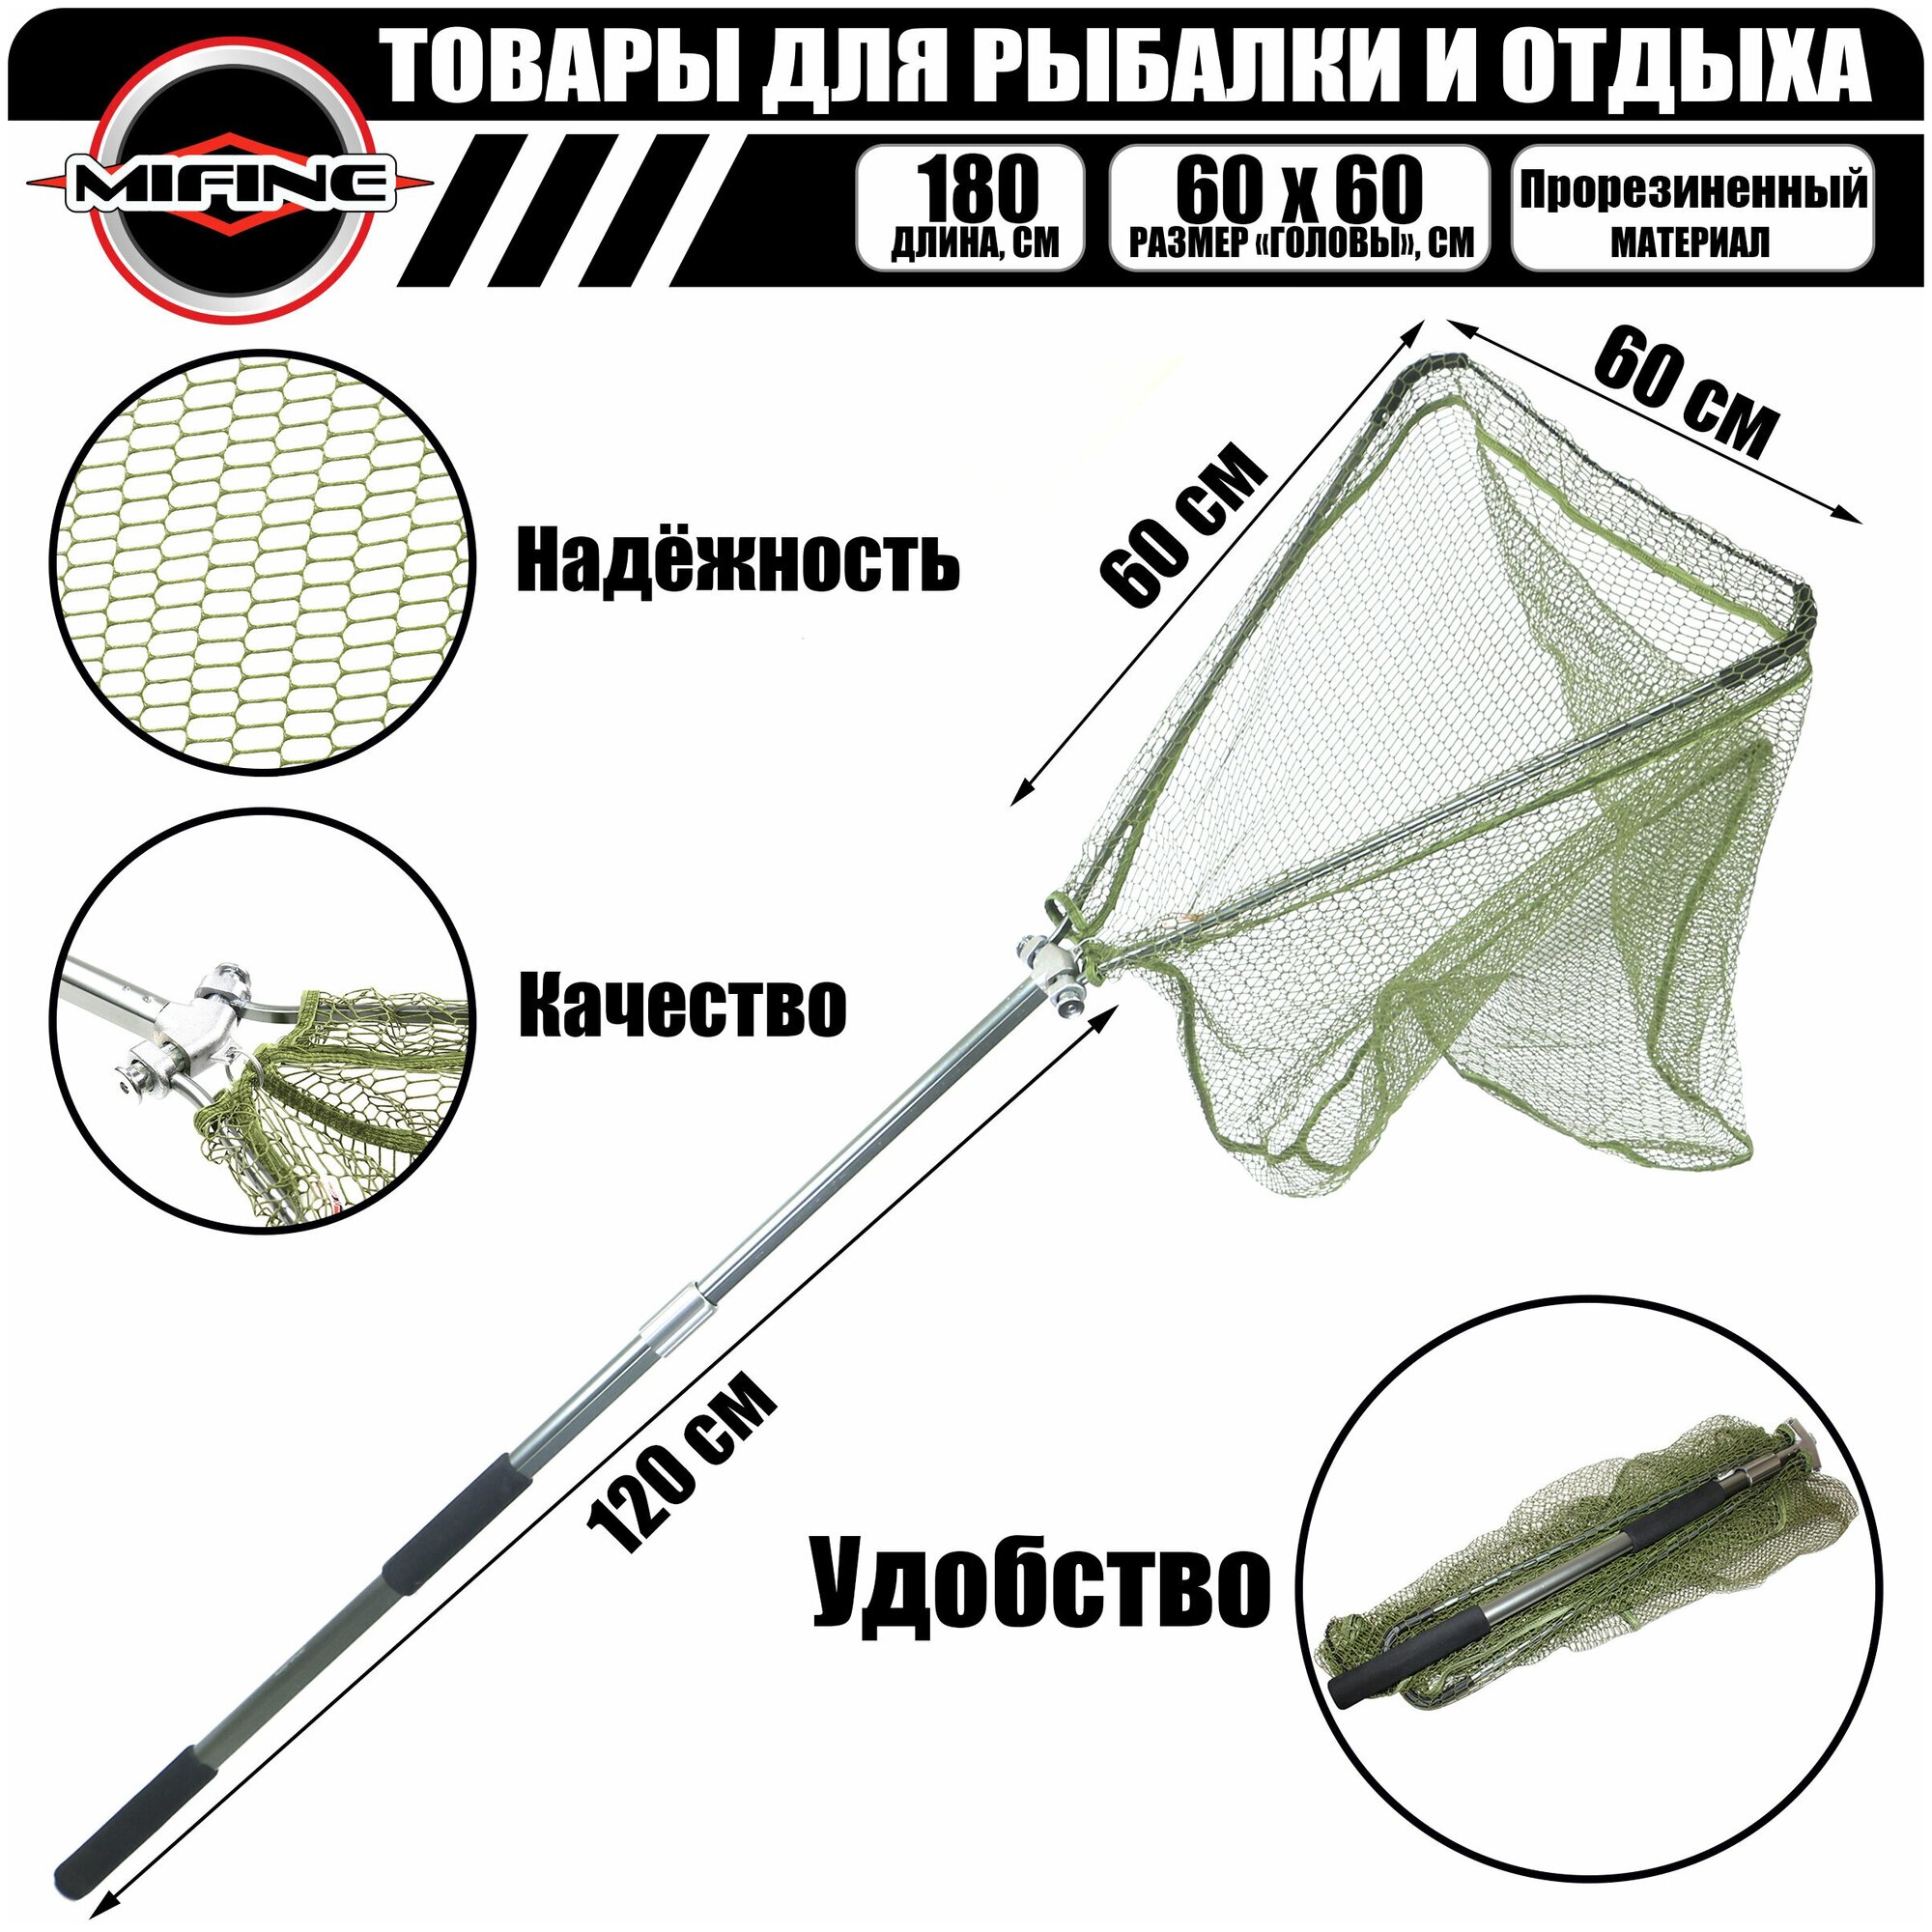 Подсак рыболовный треугольный MIFINE телескопический 12м голова 60см(прорезиненный) / подсачек для рыбалки